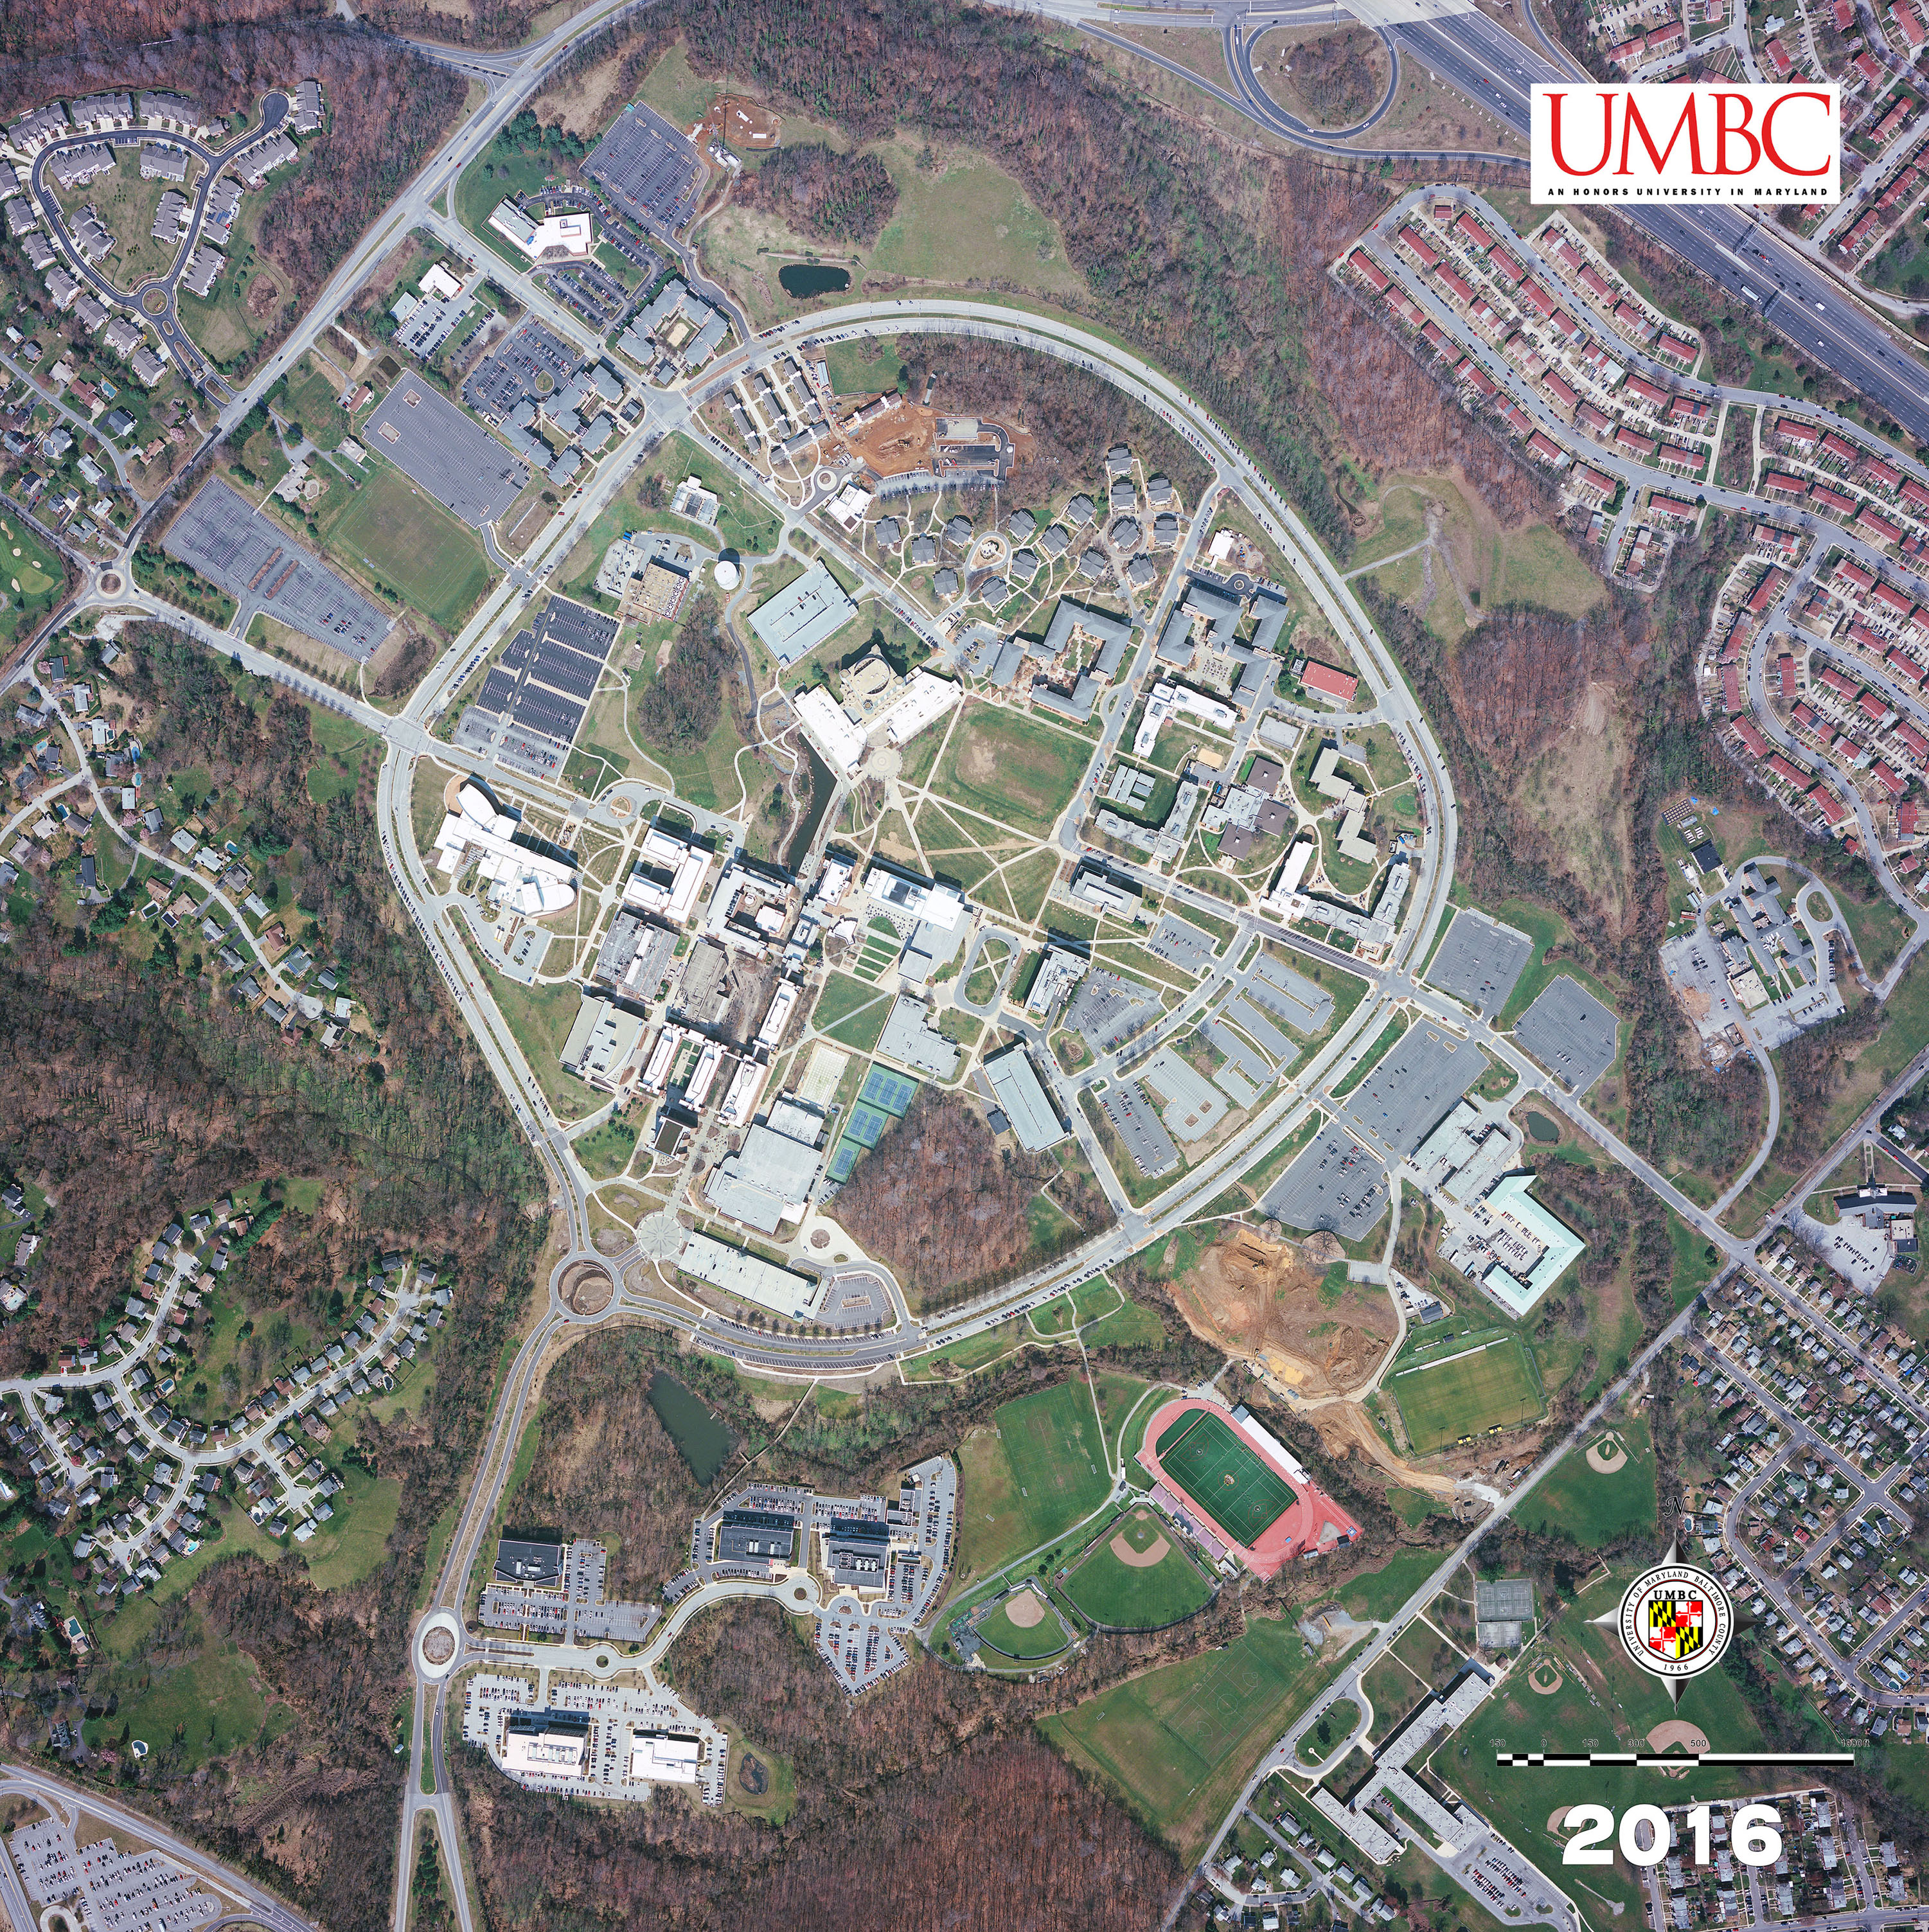 UMBC-Main-Campus-2016-email-size.jpg